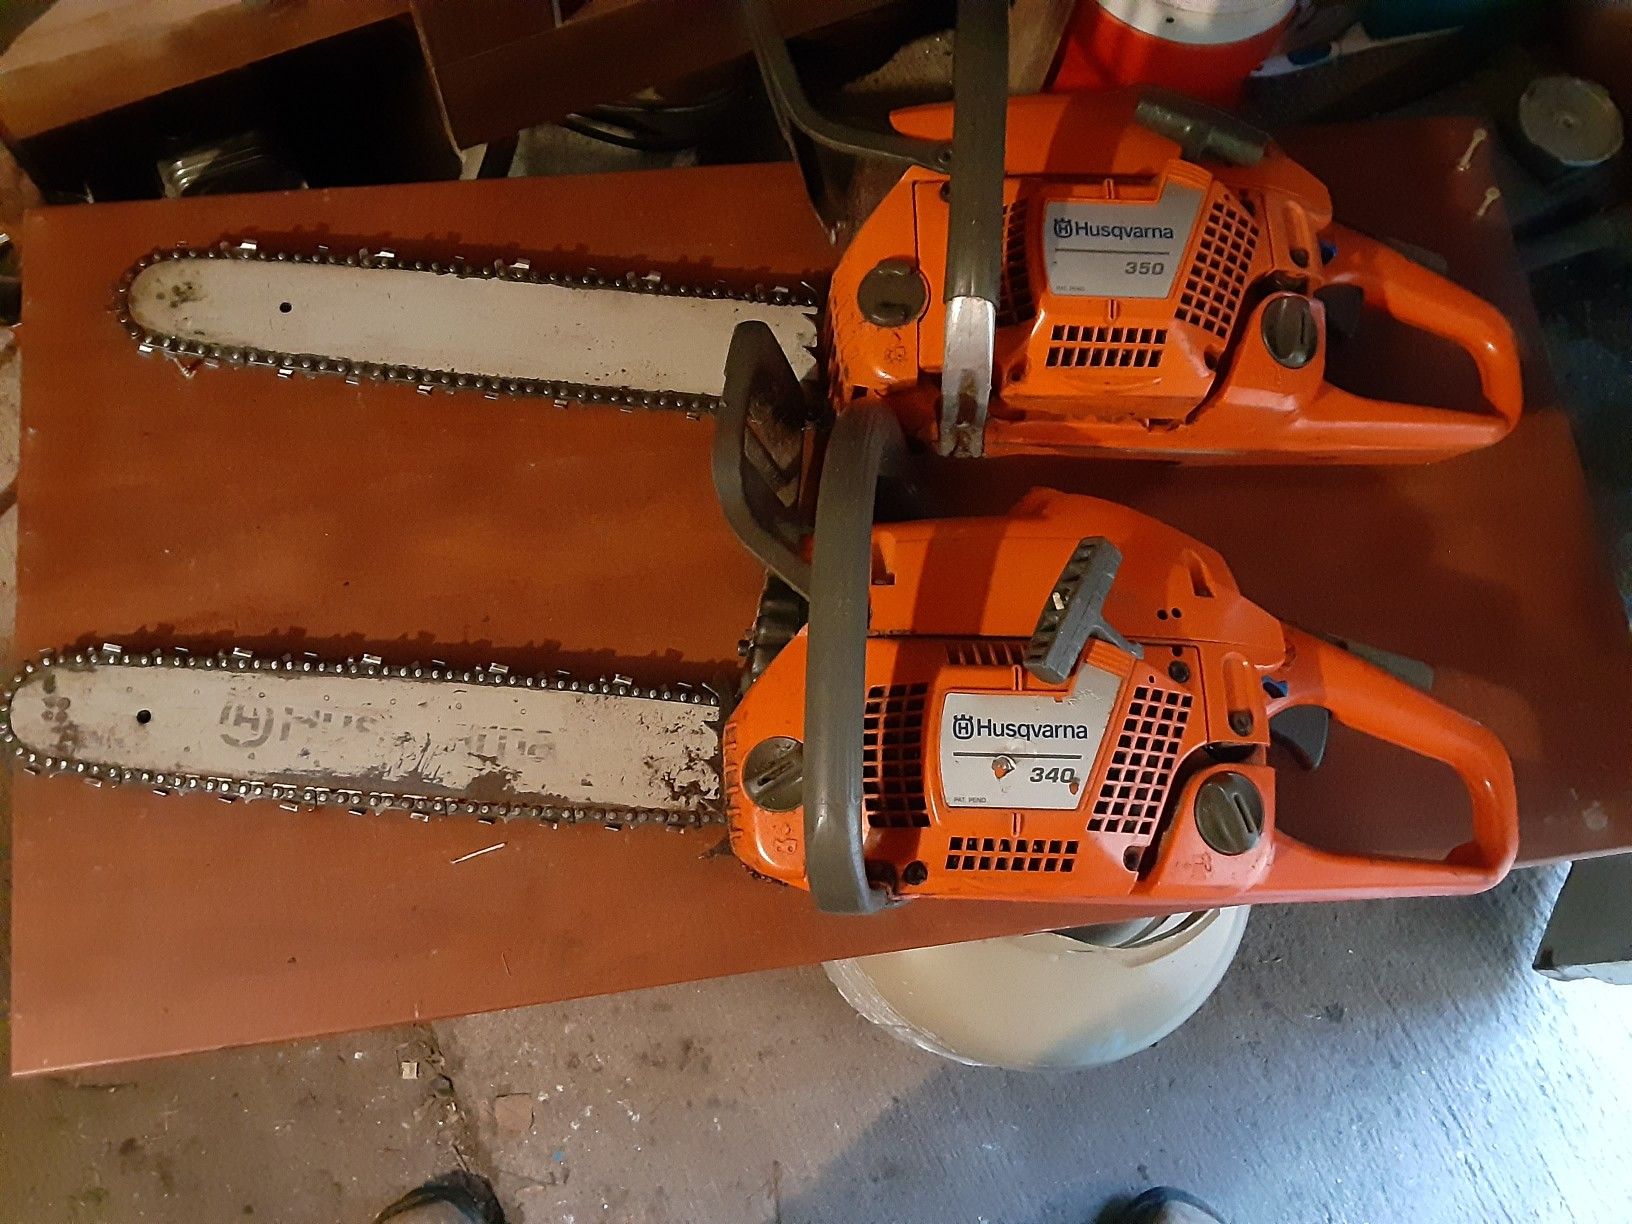 Huskavana 350 & 340 chain saws